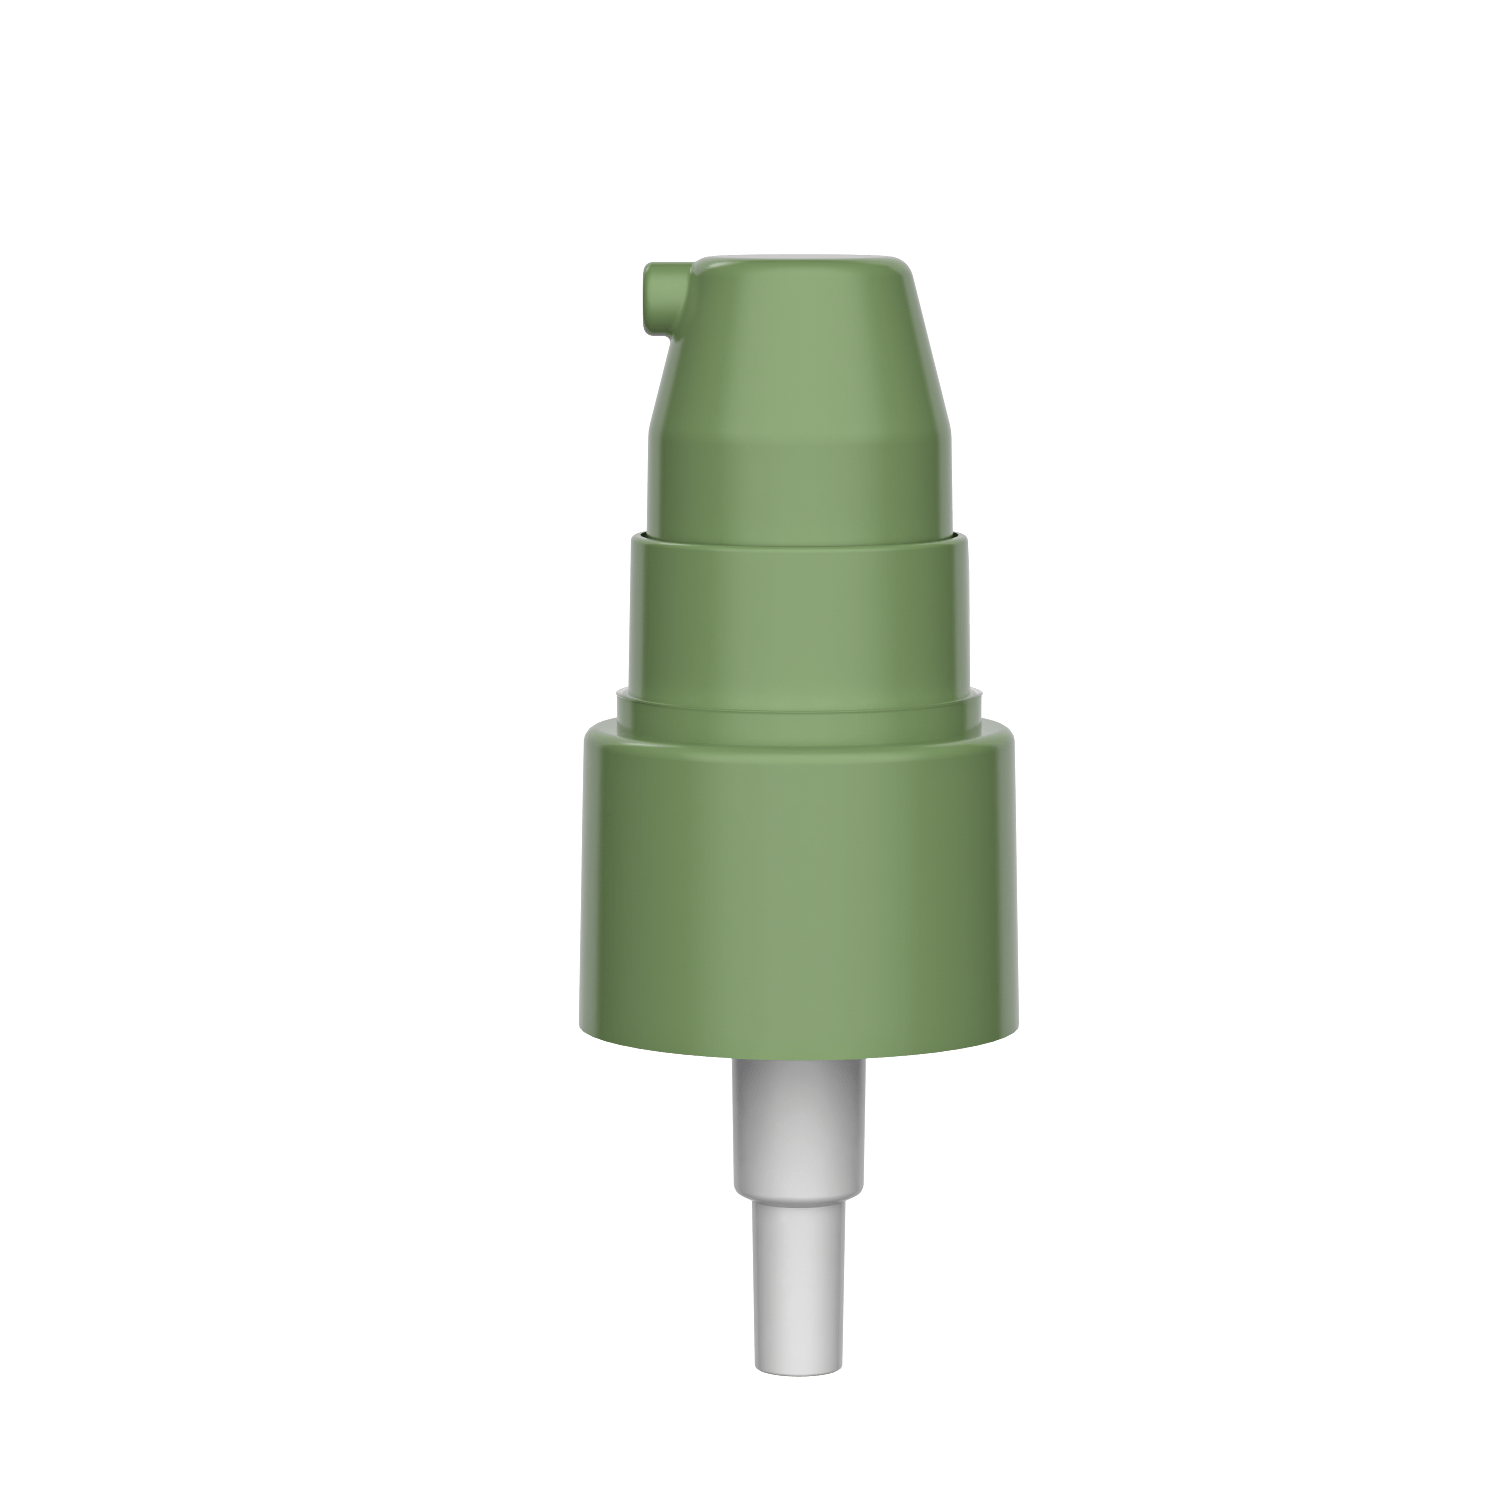 HD-417A 24/410 косметический лечебный насос кремовый насос с высокой дозировкой 0.4-0.5 куб. см